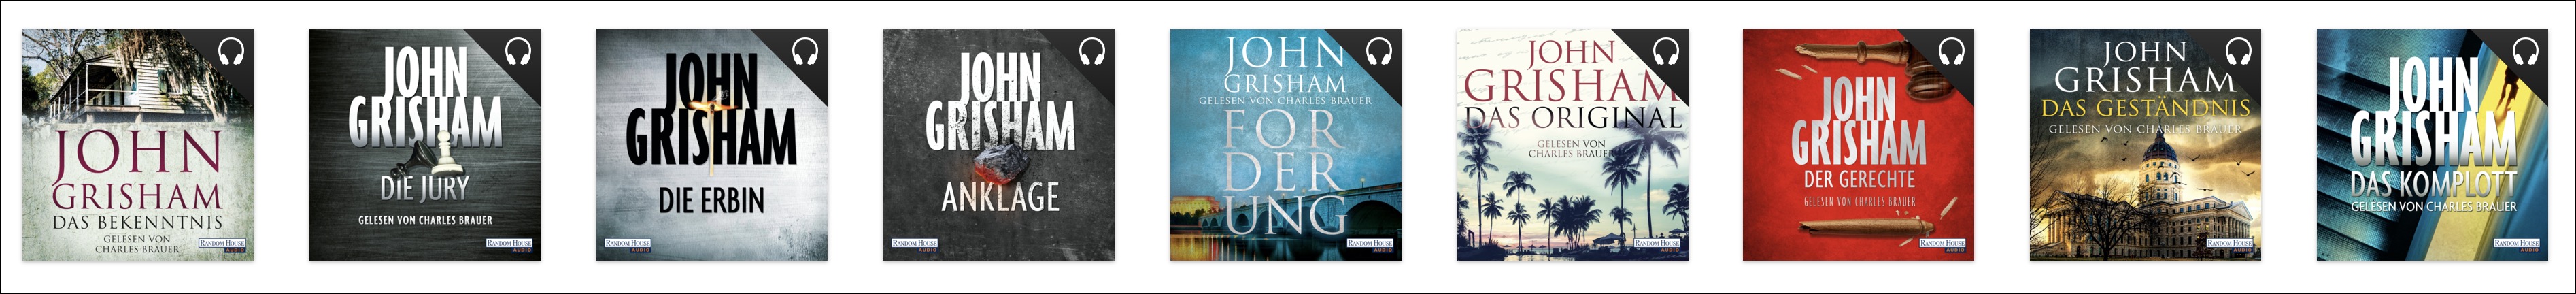 Meine frische Ladung John Grisham-Hörbücher